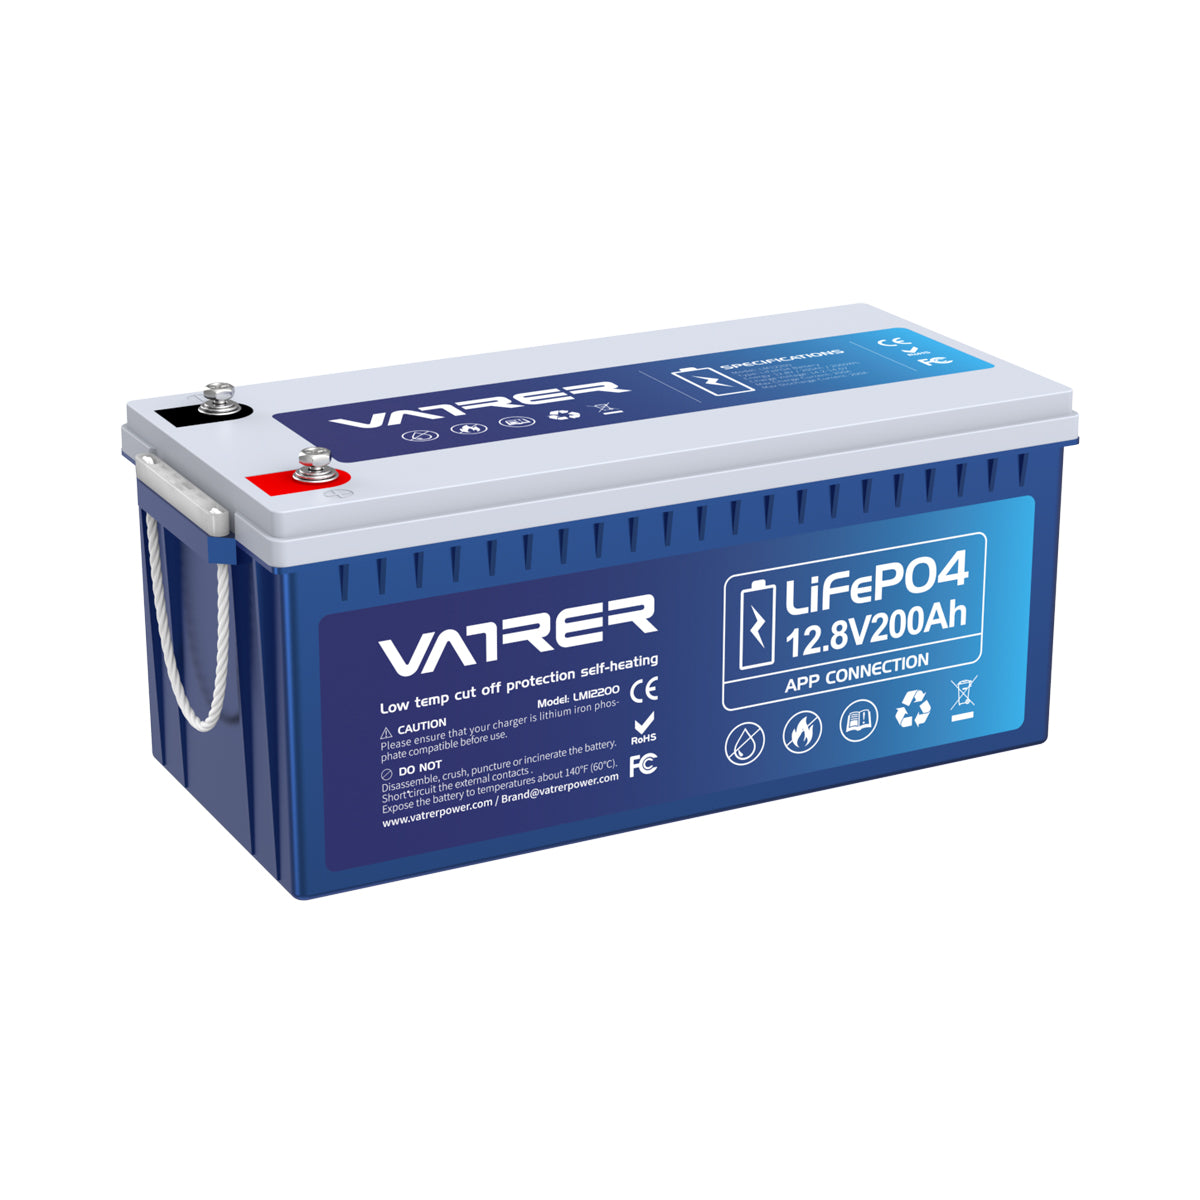 Batterie LITHIUM Fer Phosphate (LiFePO4) 12.8V 200ah Power Battery